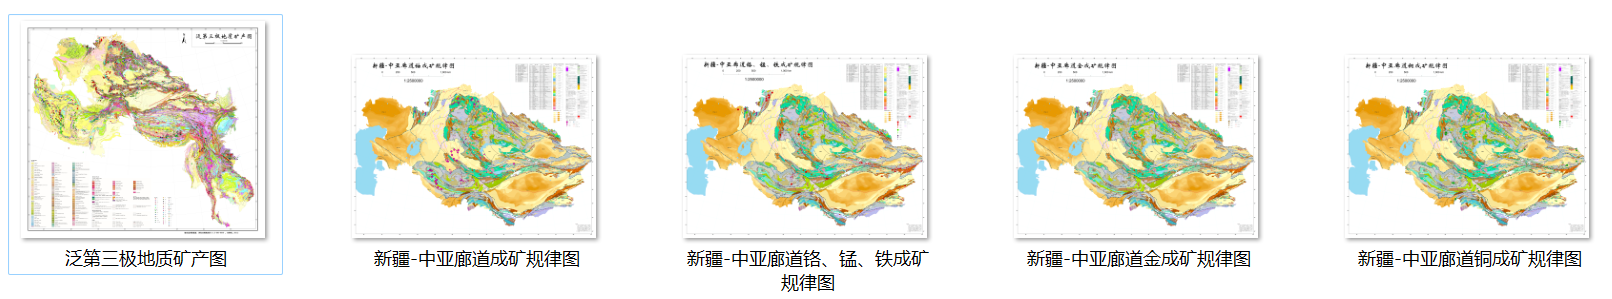 新疆-中亚矿产资源分布及其潜力评估（2018.1-2021.12）